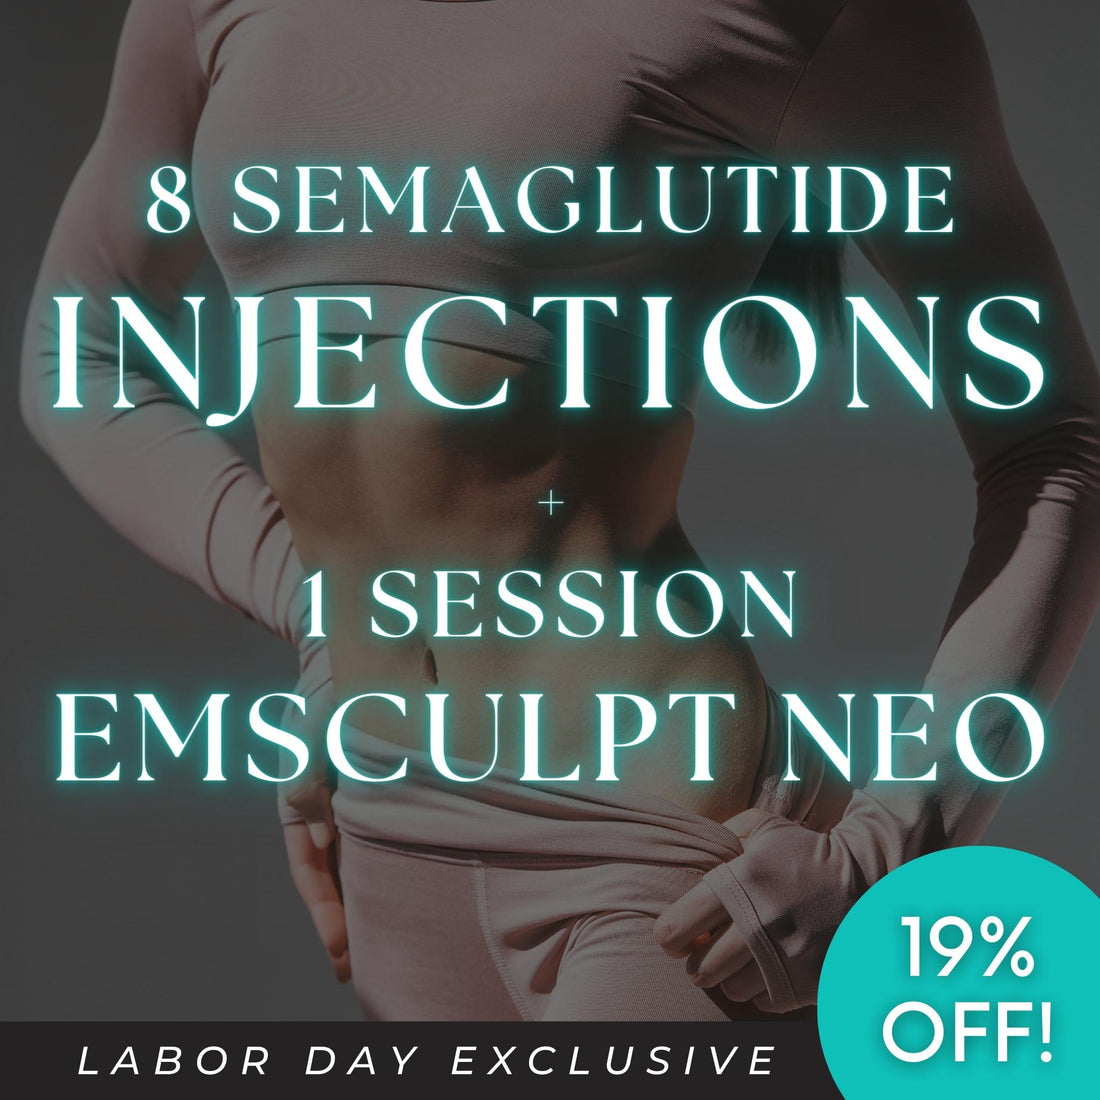 Labor Day Exclusive: 8 Semaglutide Shots + 1 EMSCULPT NEO Session